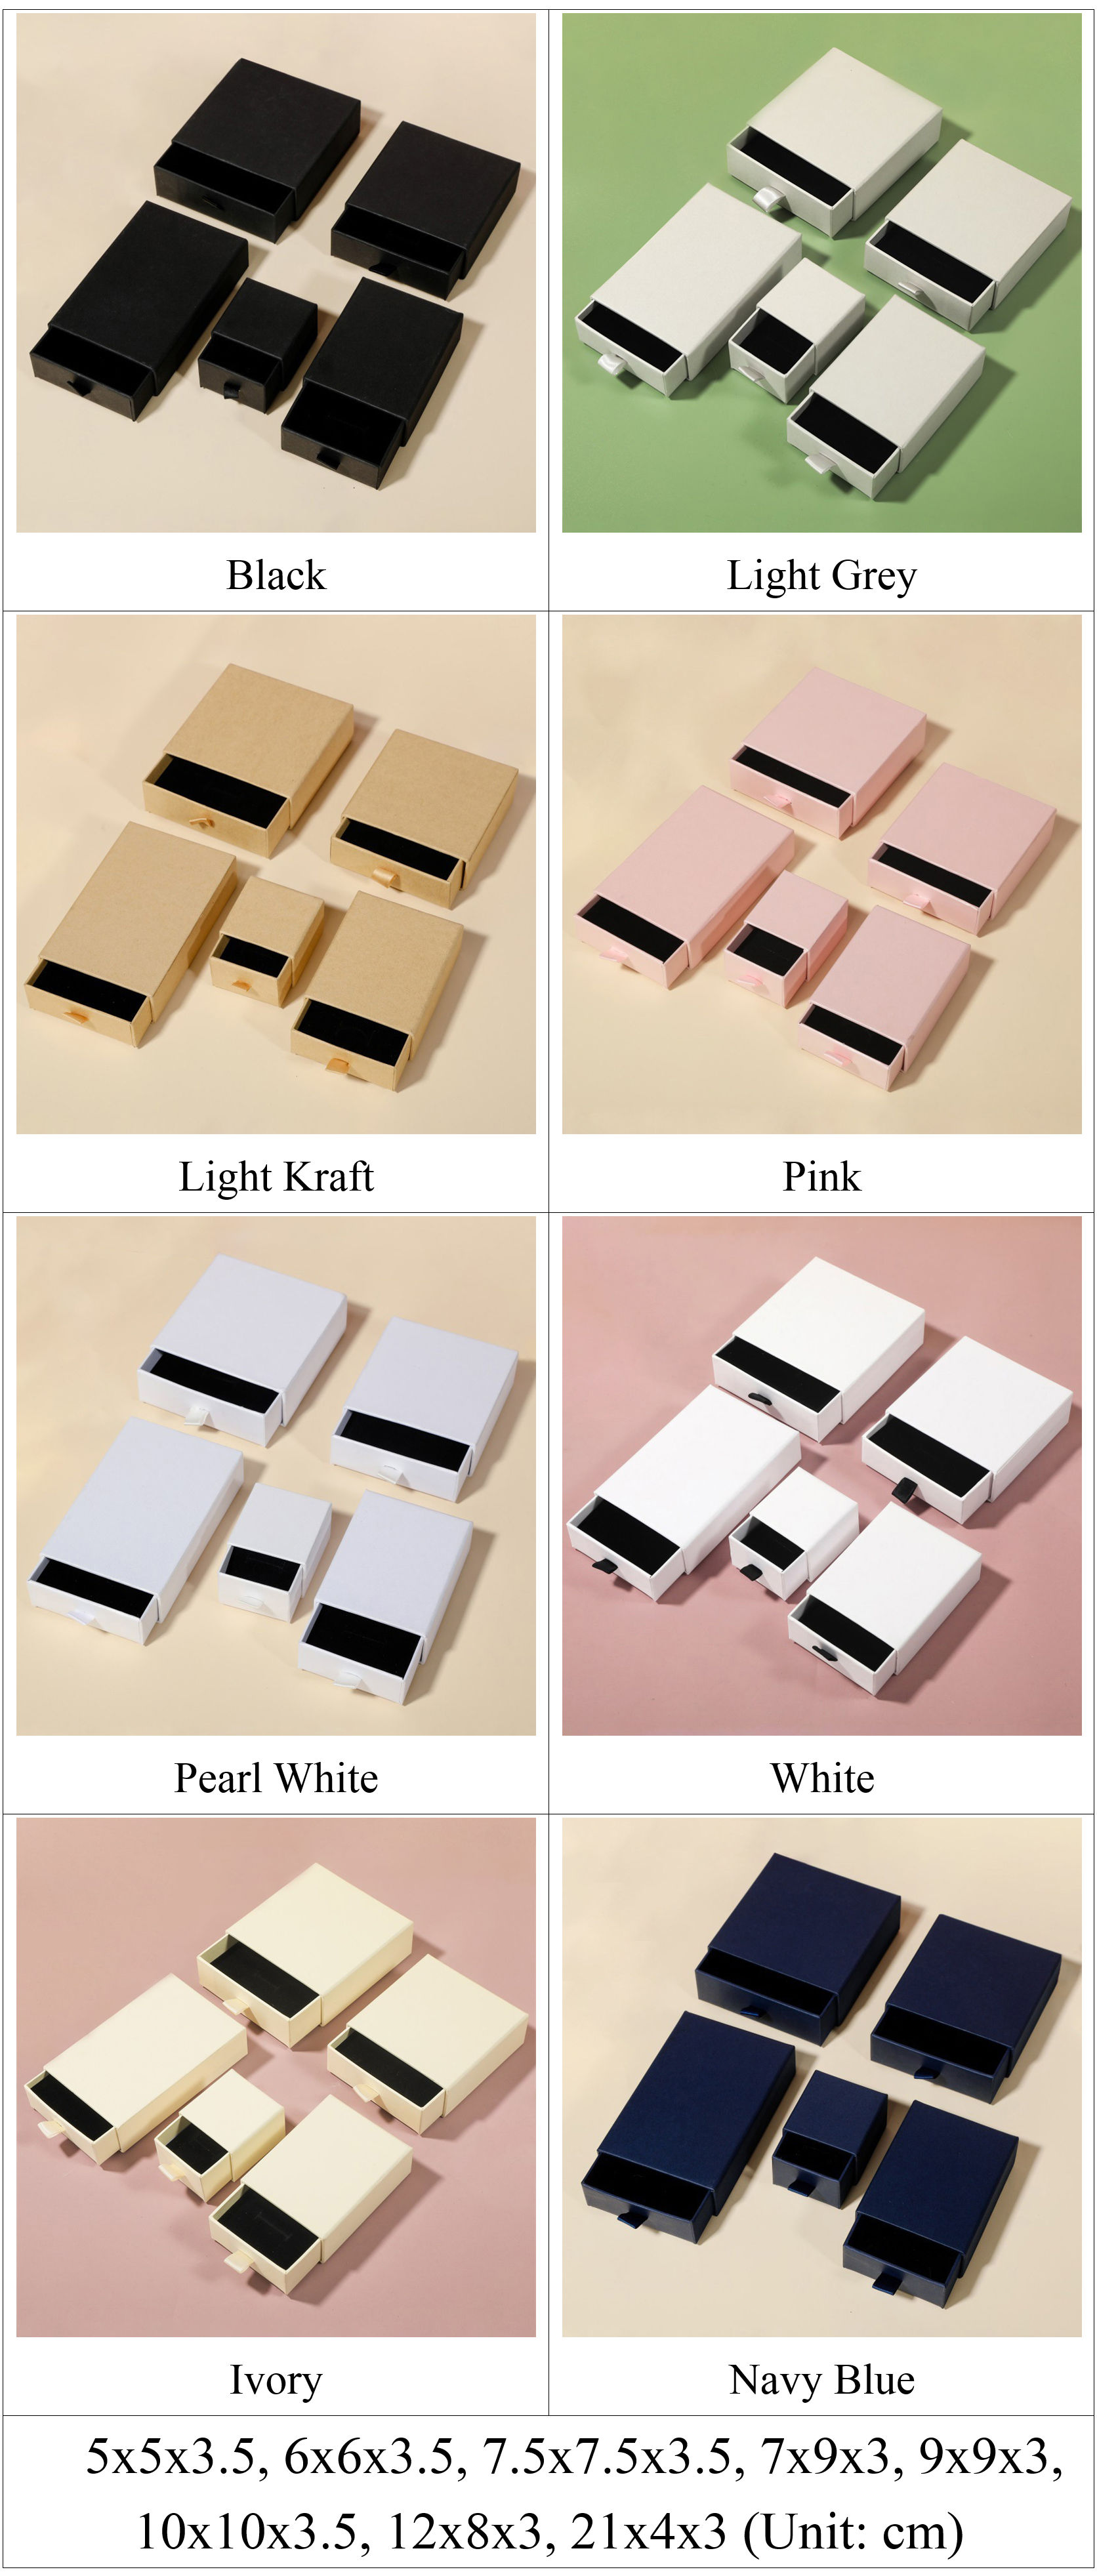 Großhandels-Schubladenbox aus Papier für Schmuck, vorrätige Farben und Größen.